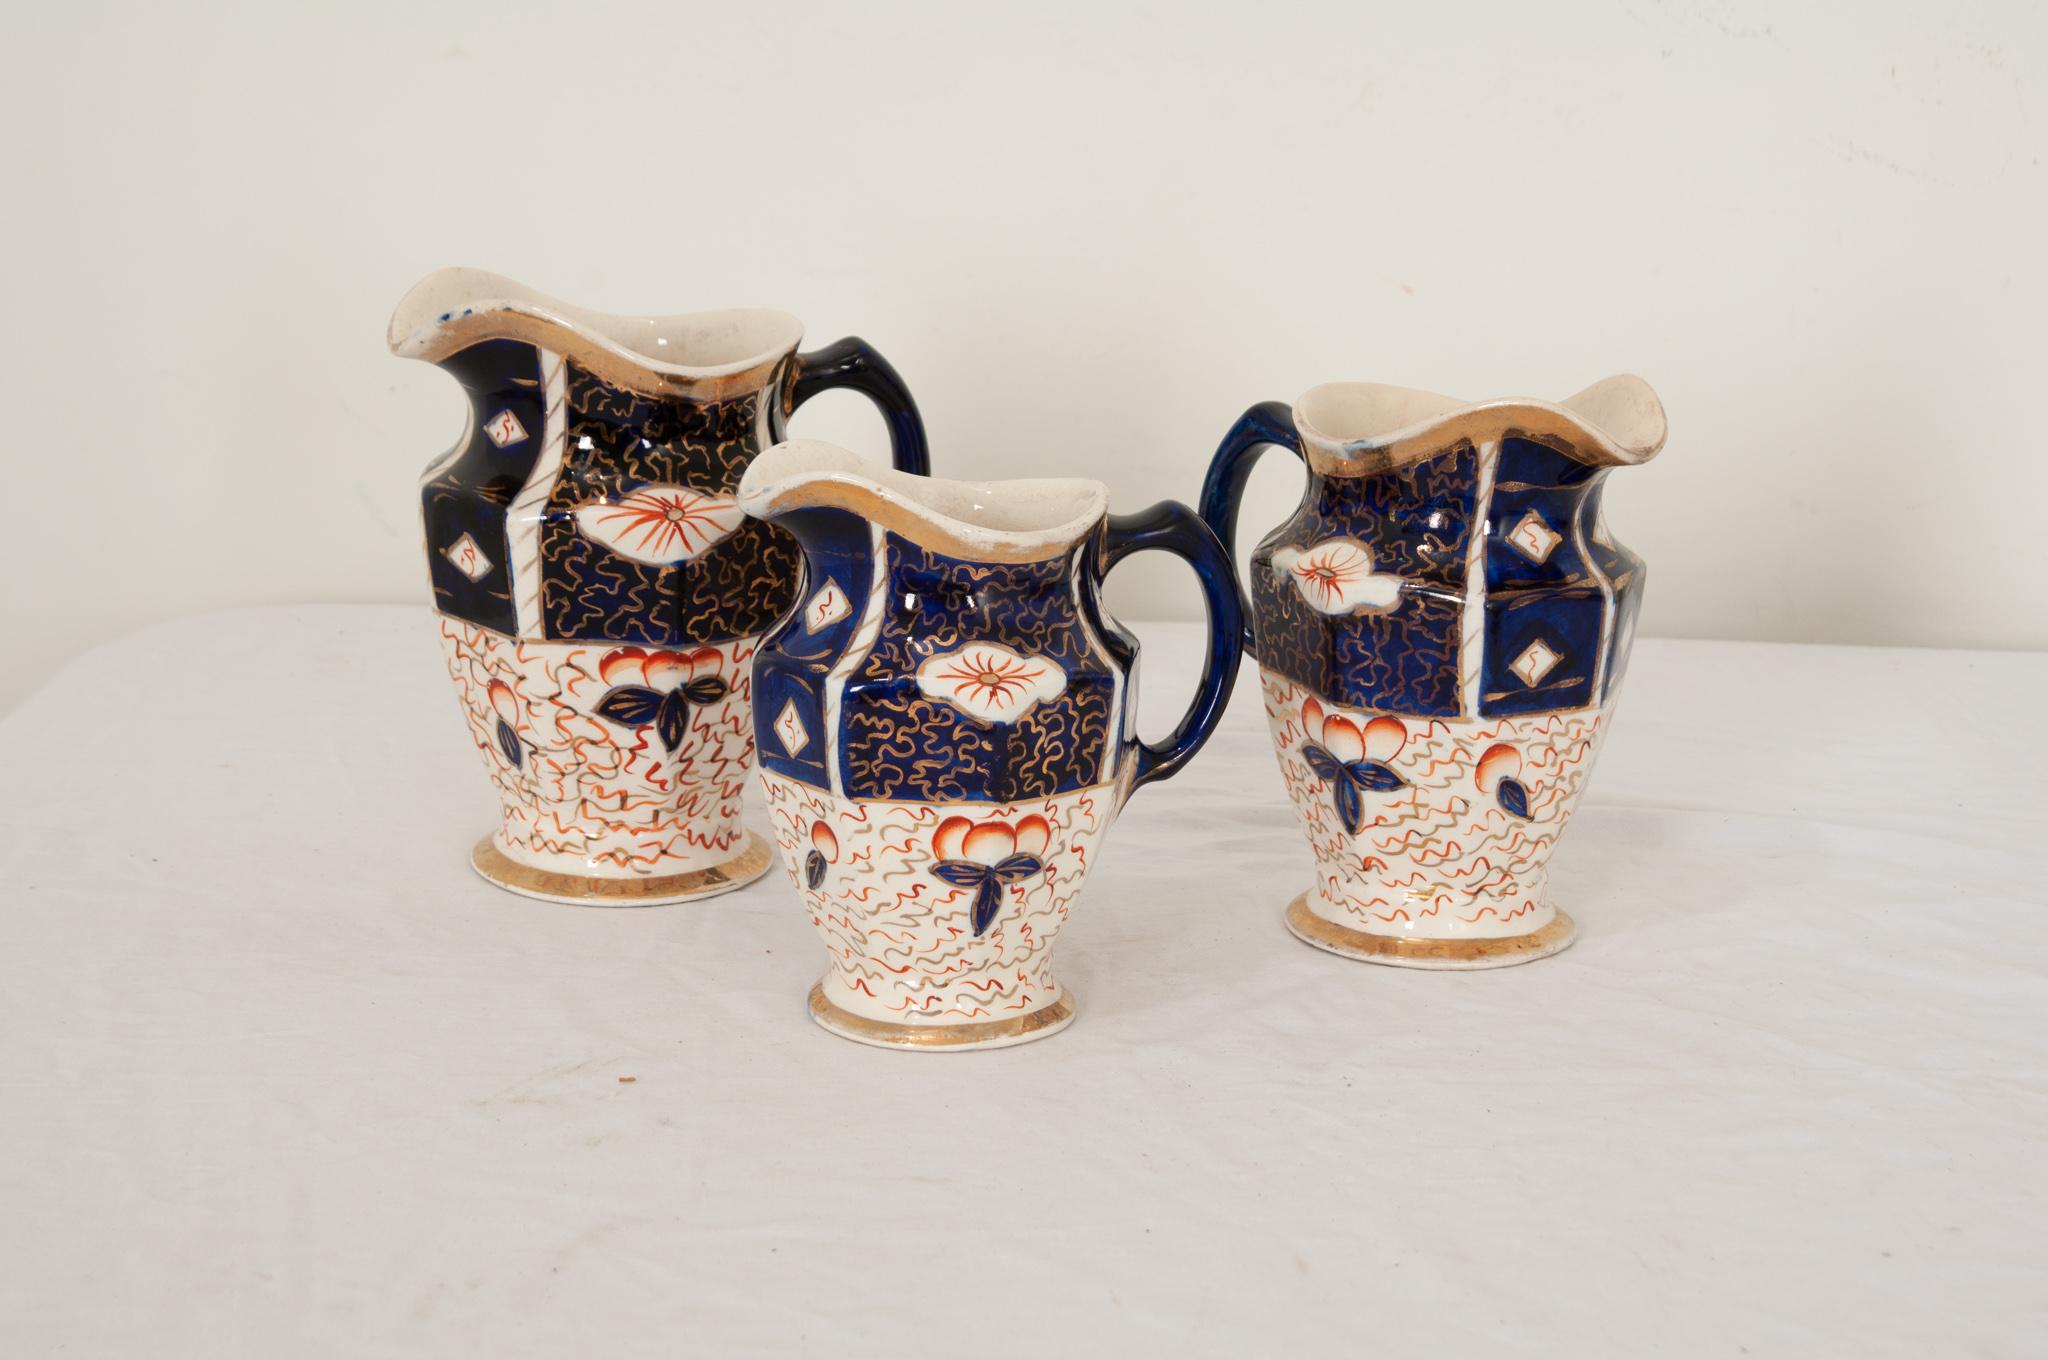 Eine Sammlung englischer Porzellankrüge aus dem 19. Jahrhundert mit handgemalter Oberfläche. Diese dekorativen Krüge, die als Set verkauft werden, zeigen ein kobaltblaues und tiefrotes Design mit asiatischer Ästhetik auf cremefarbenem Geschirr, das